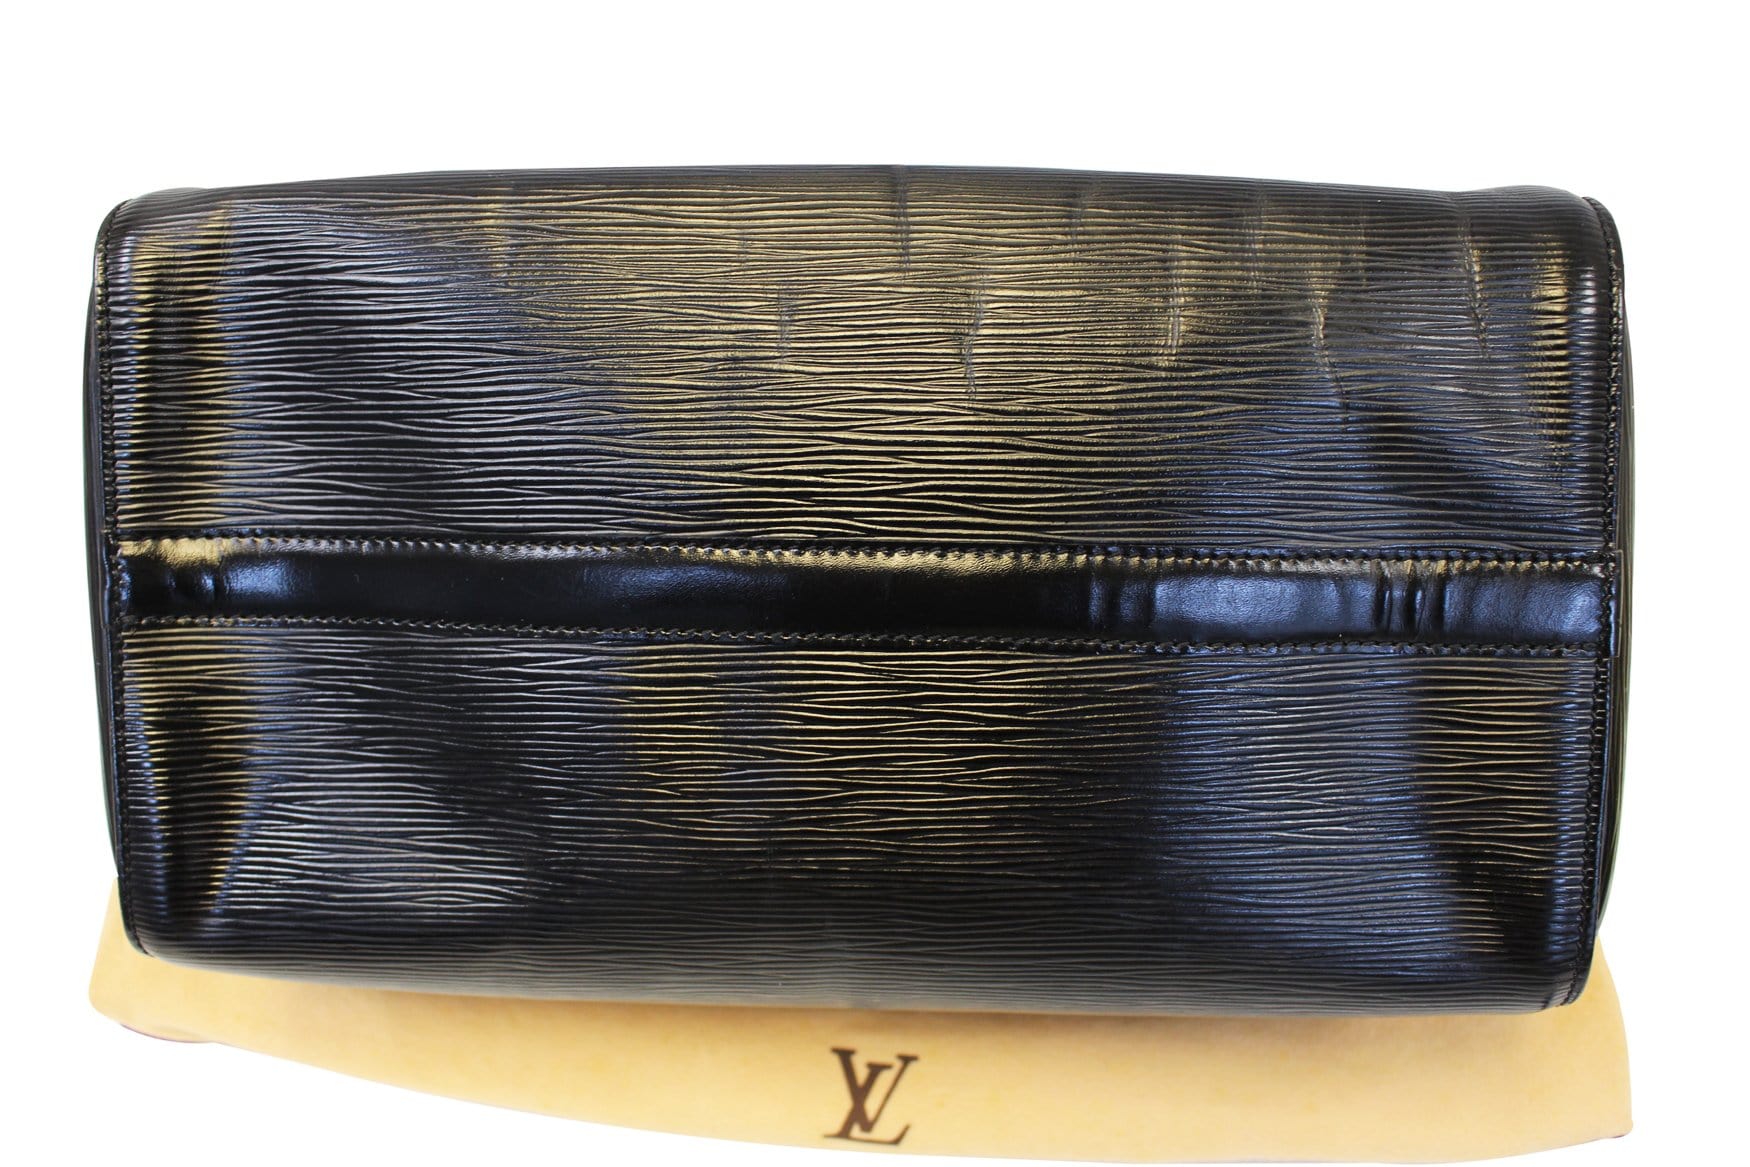 Speedy 30 Epi – Keeks Designer Handbags